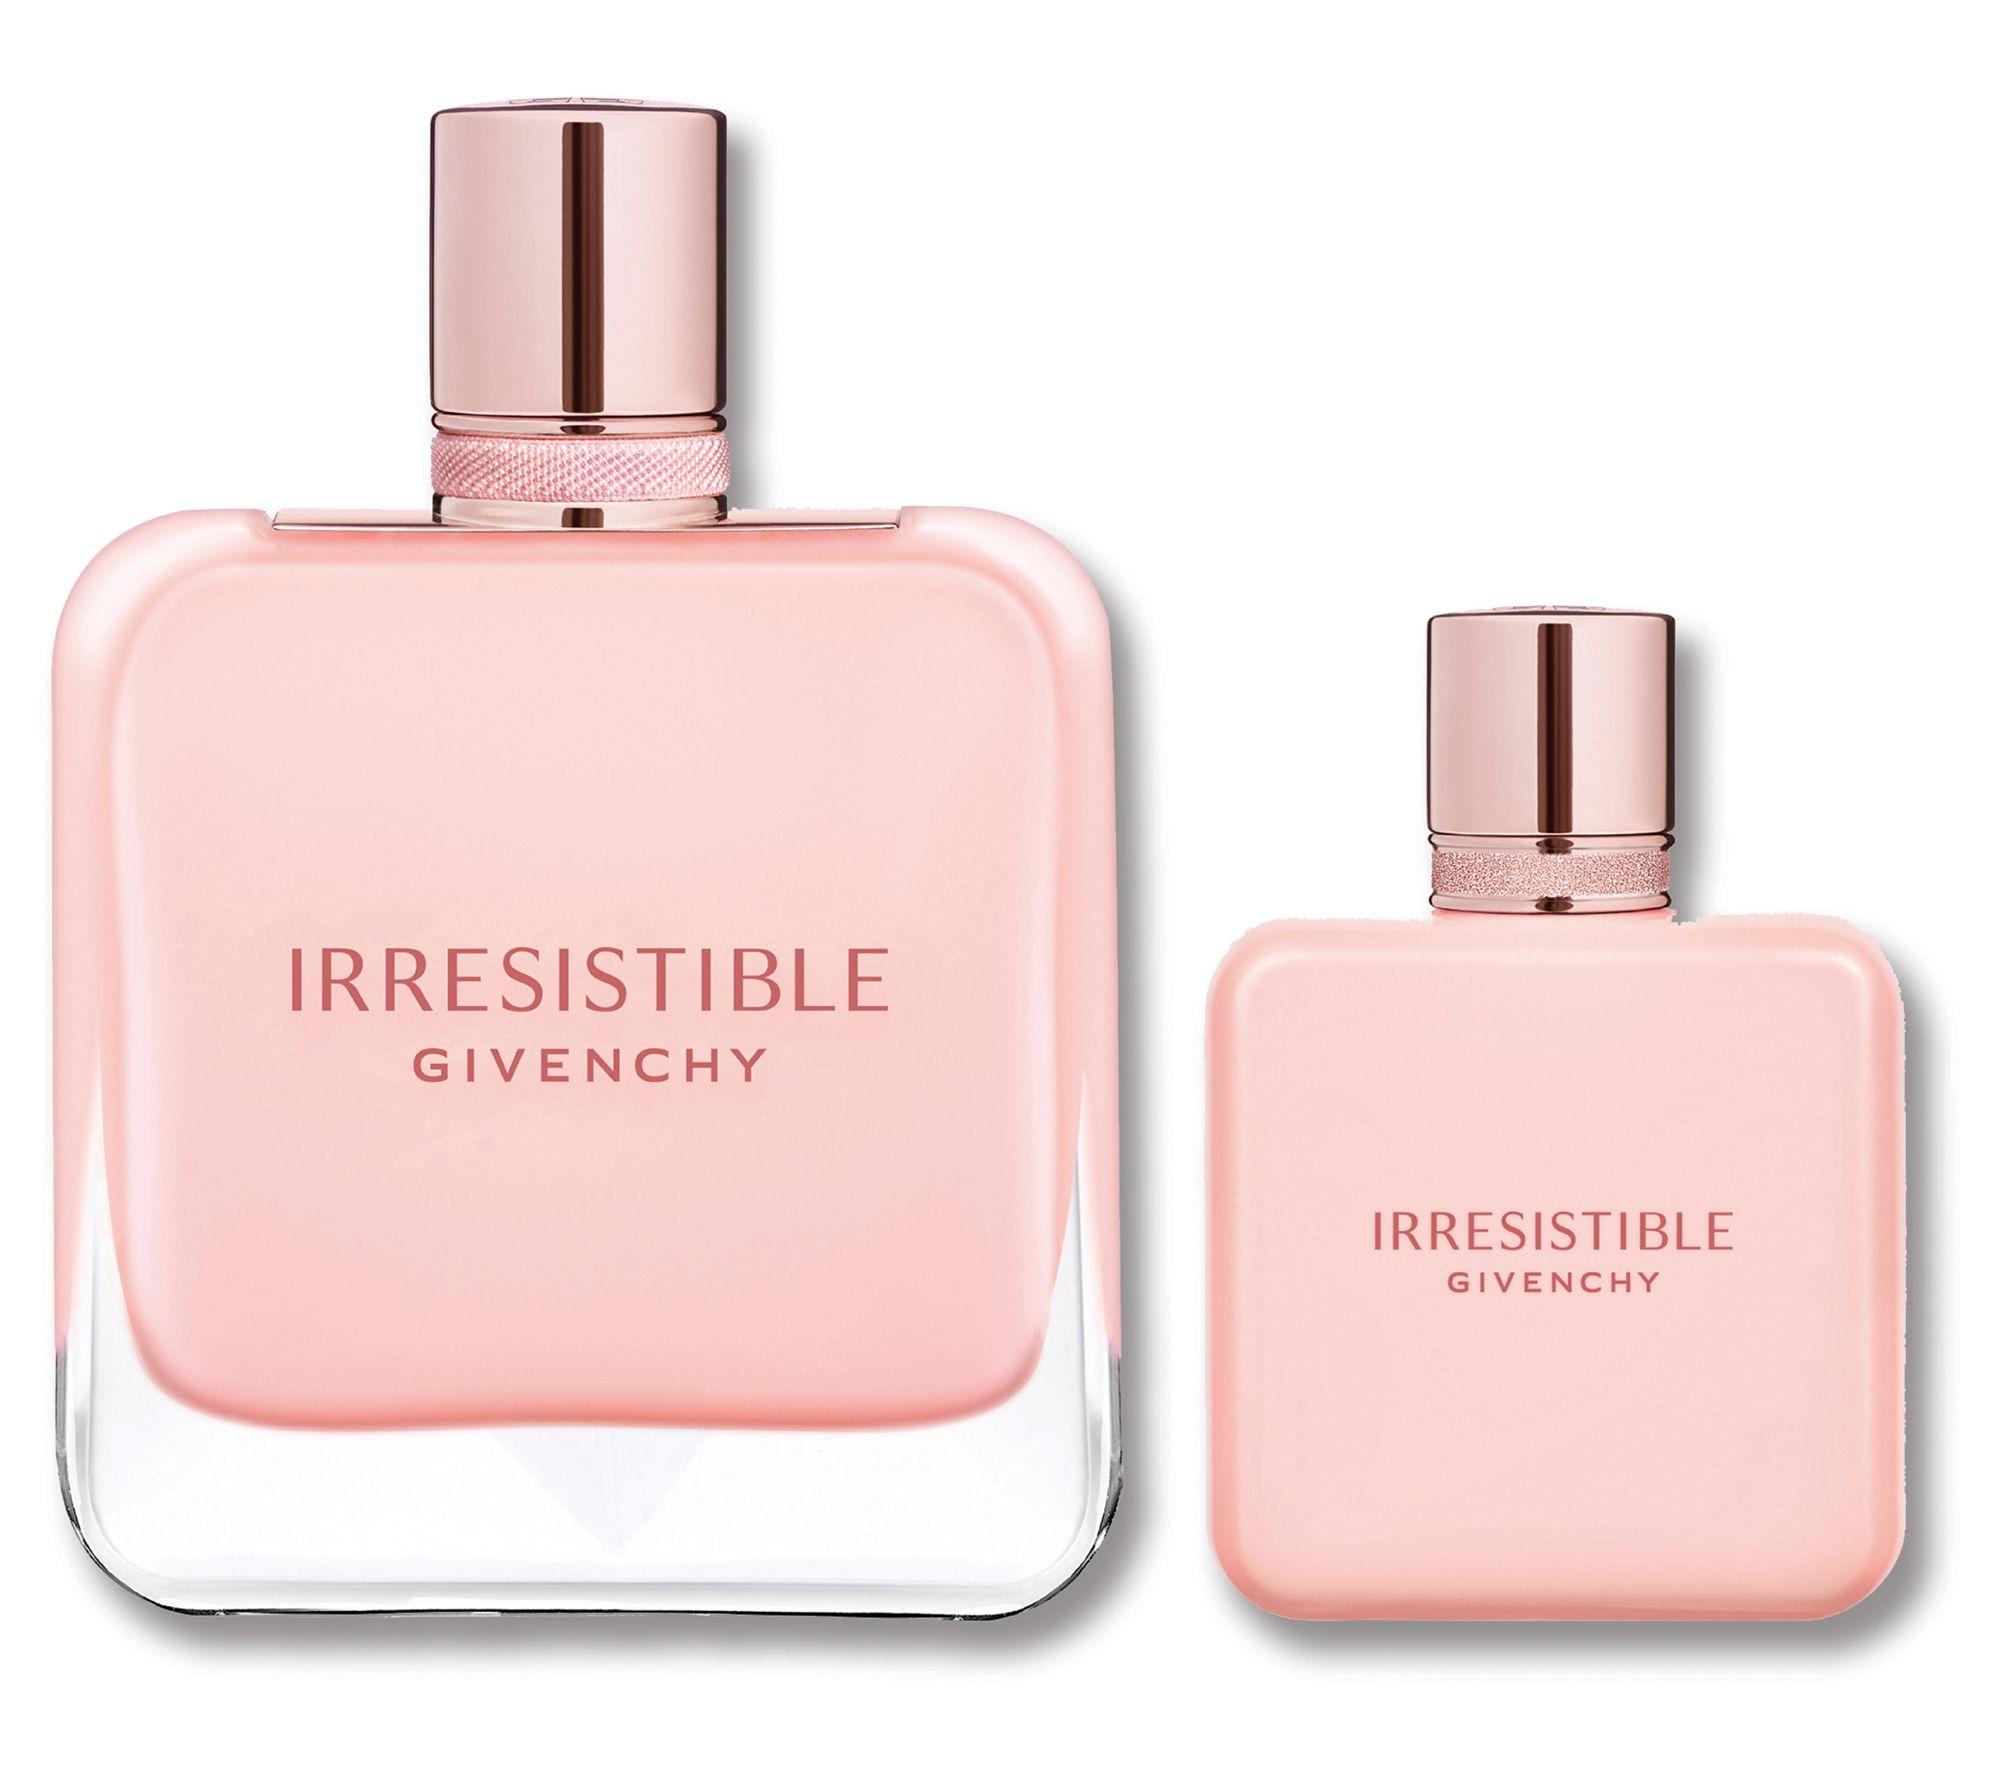 very irresistible parfum